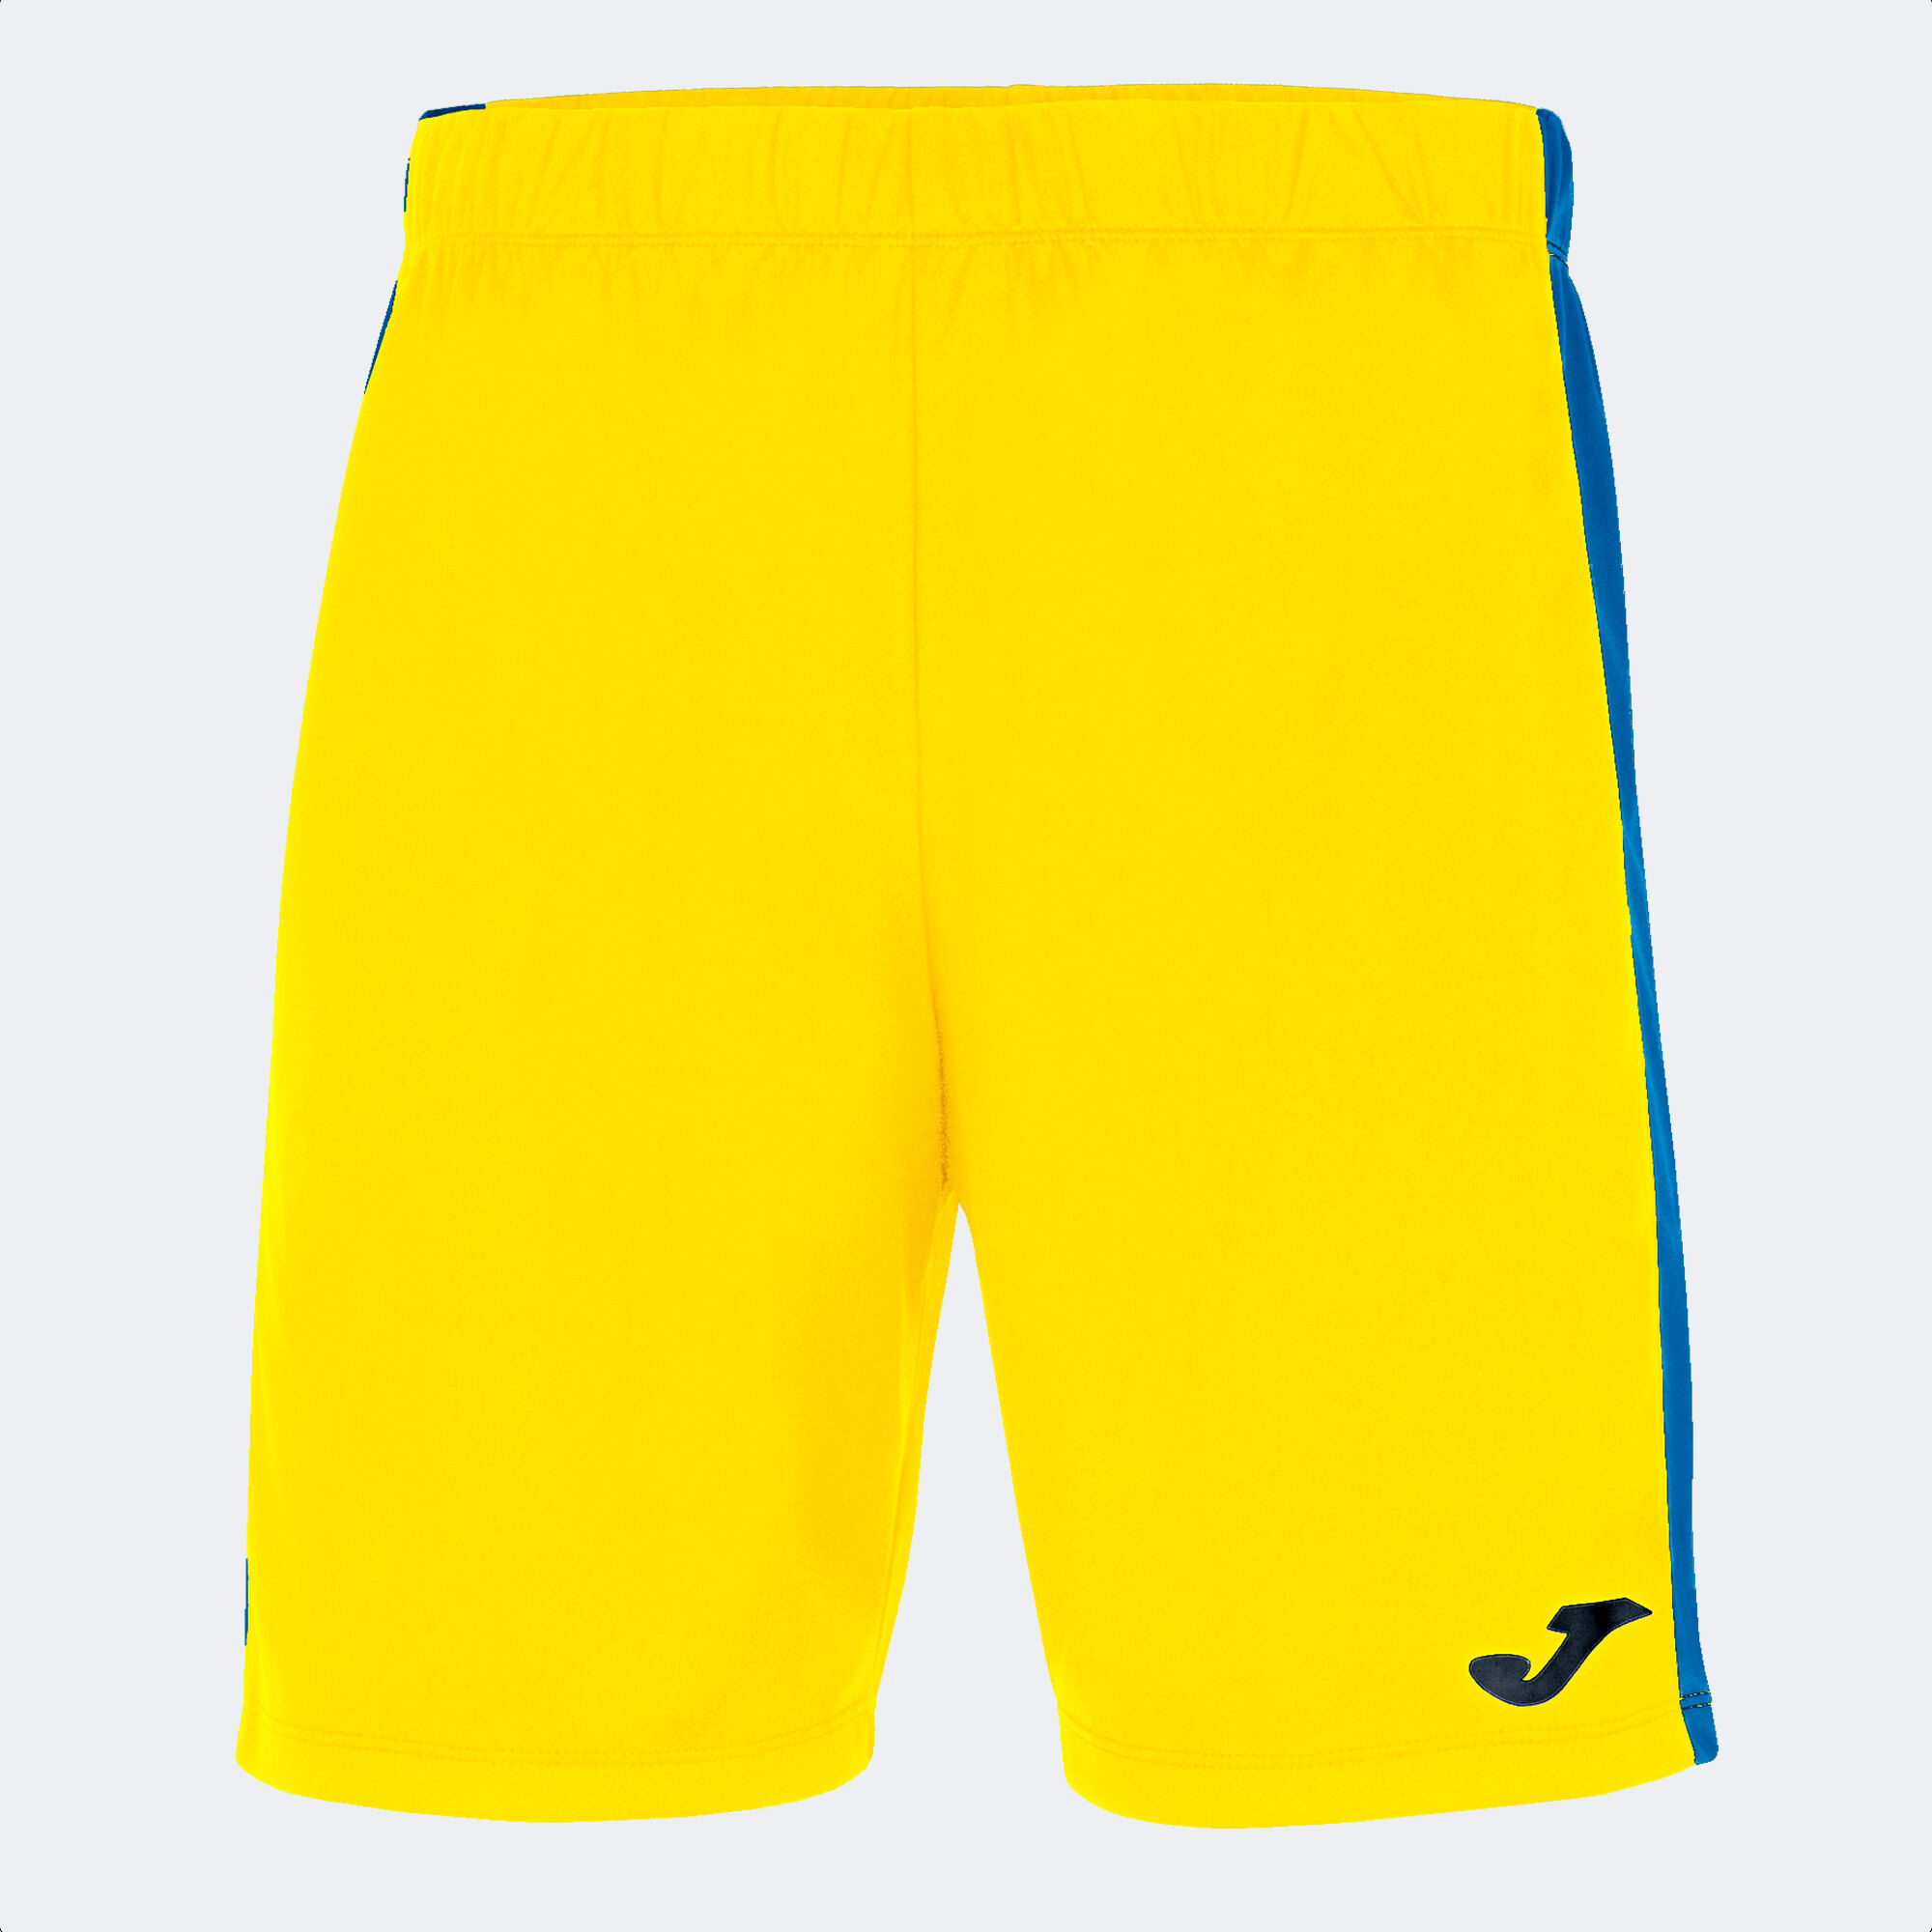 Shorts man Maxi yellow royal blue